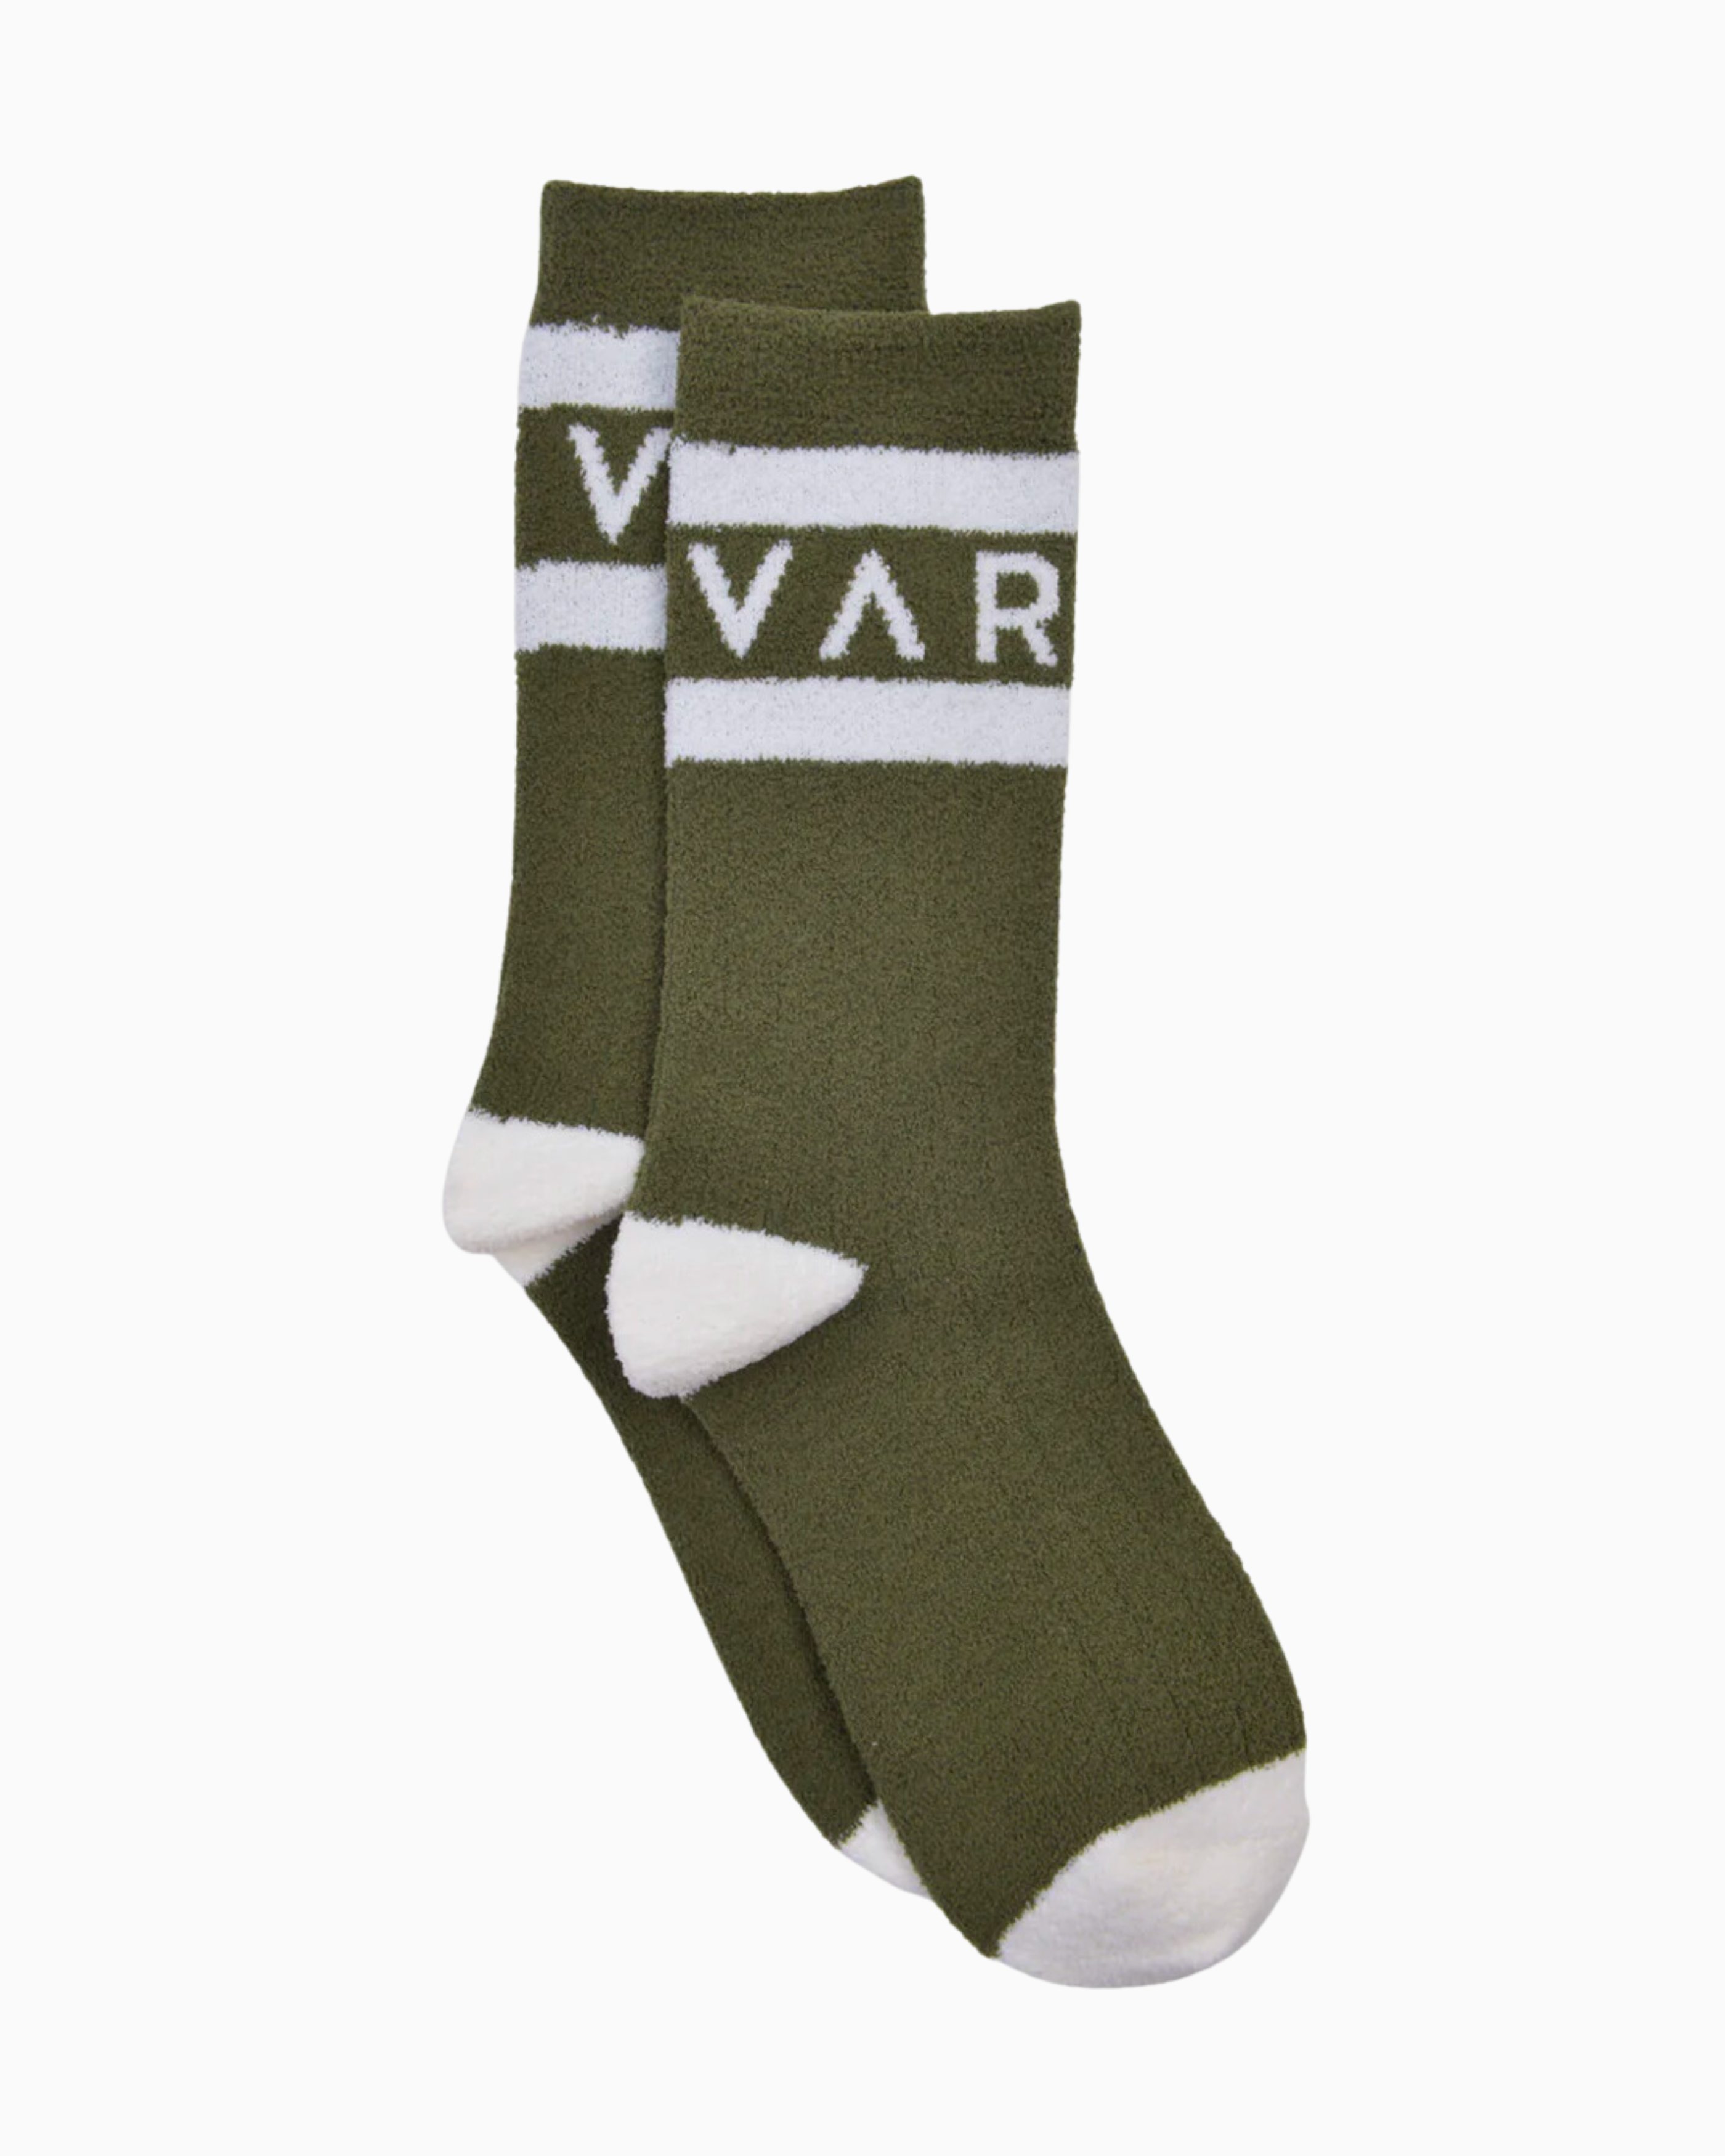 Varley Spencer Sock in Dark Olive/Egret